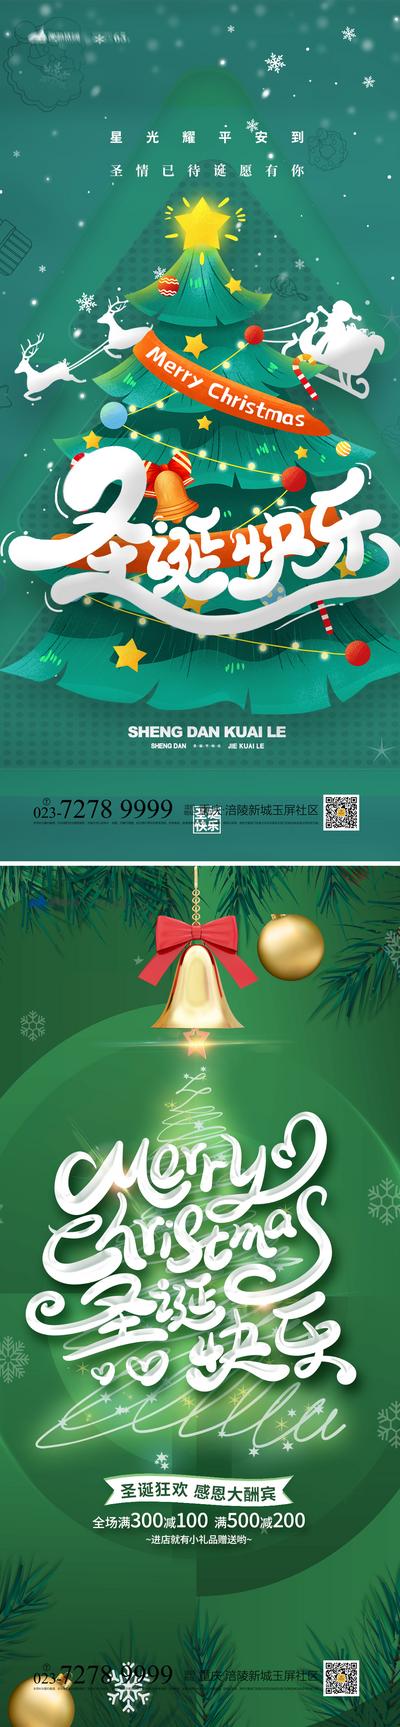 南门网 海报 房地产 公历节日 圣诞节 圣诞树 铃铛 插画